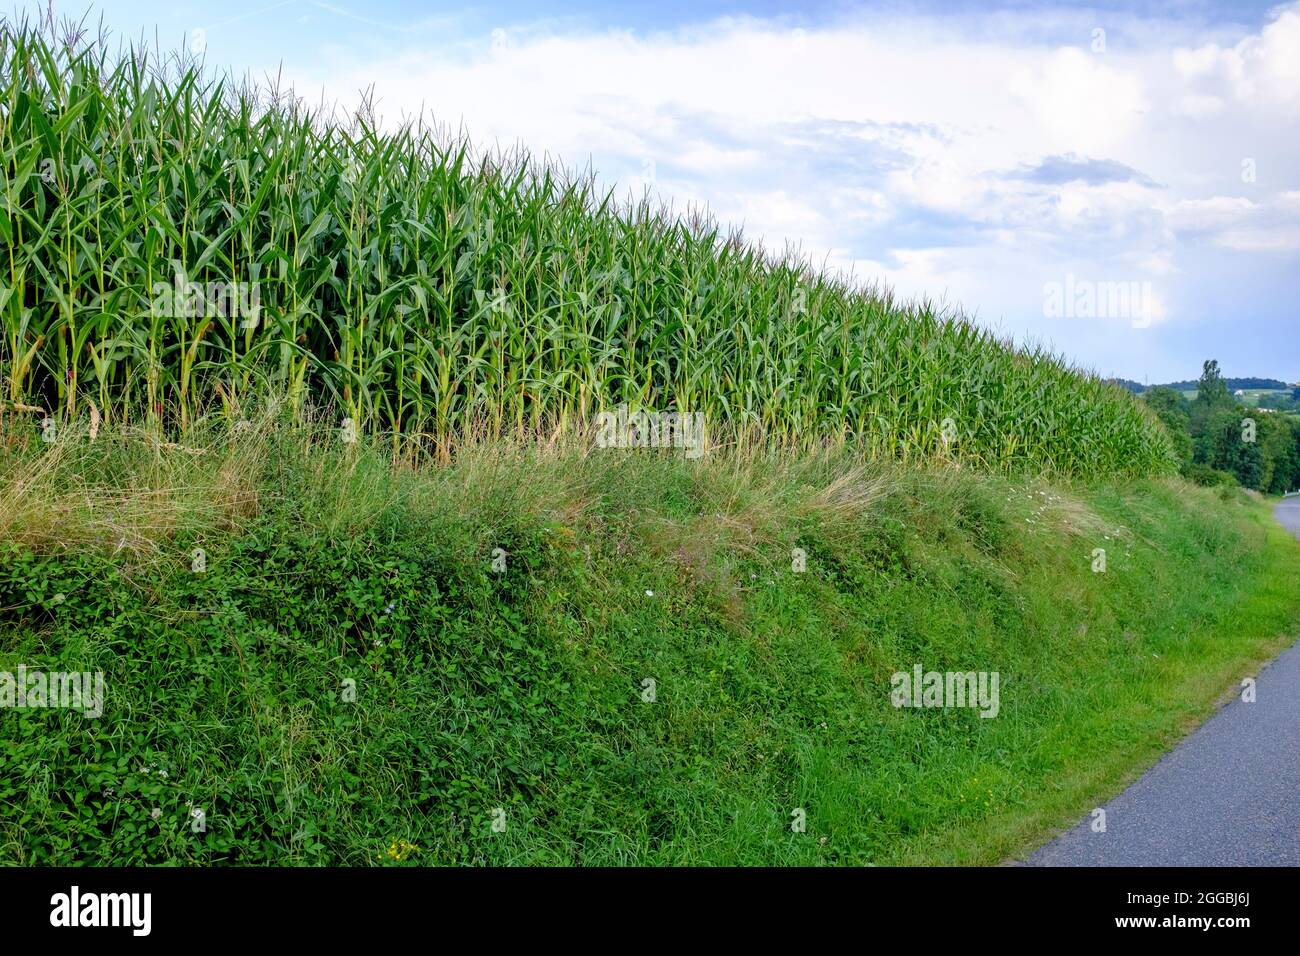 Corn field in summer in Saint Medar en Forez in Rhone-Alpes region of France Stock Photo